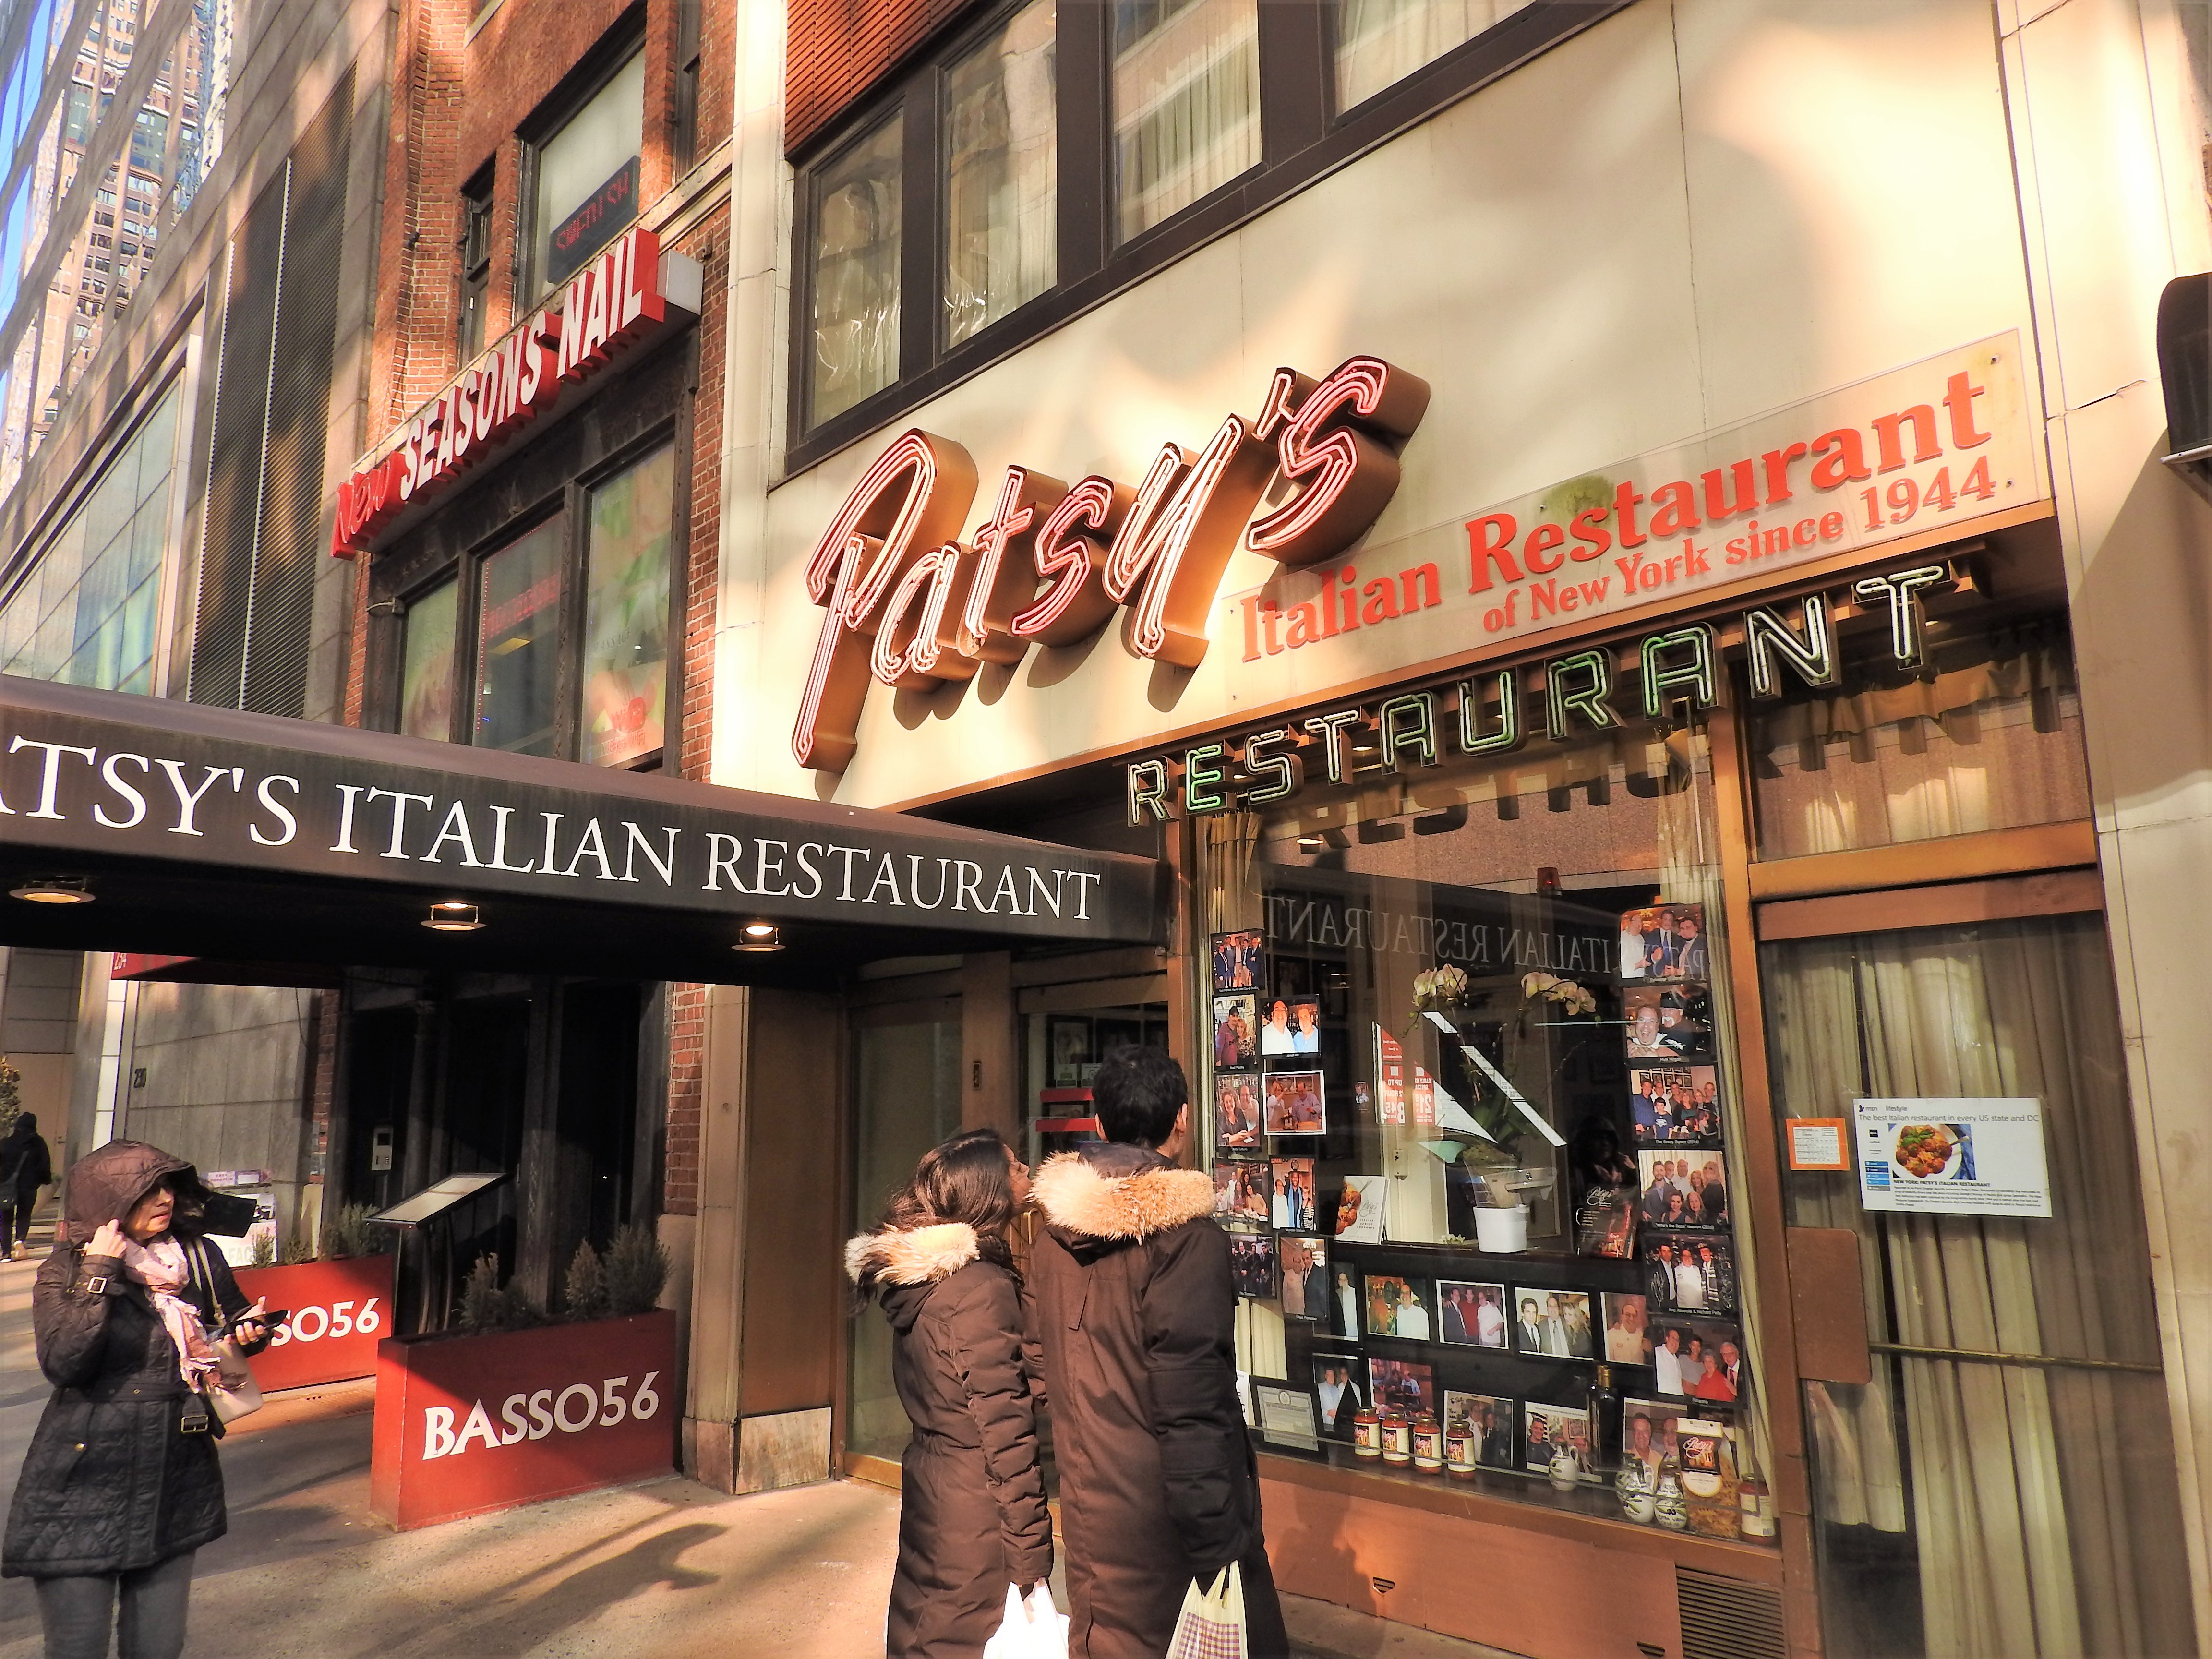 patsy italian restaurant nyc review